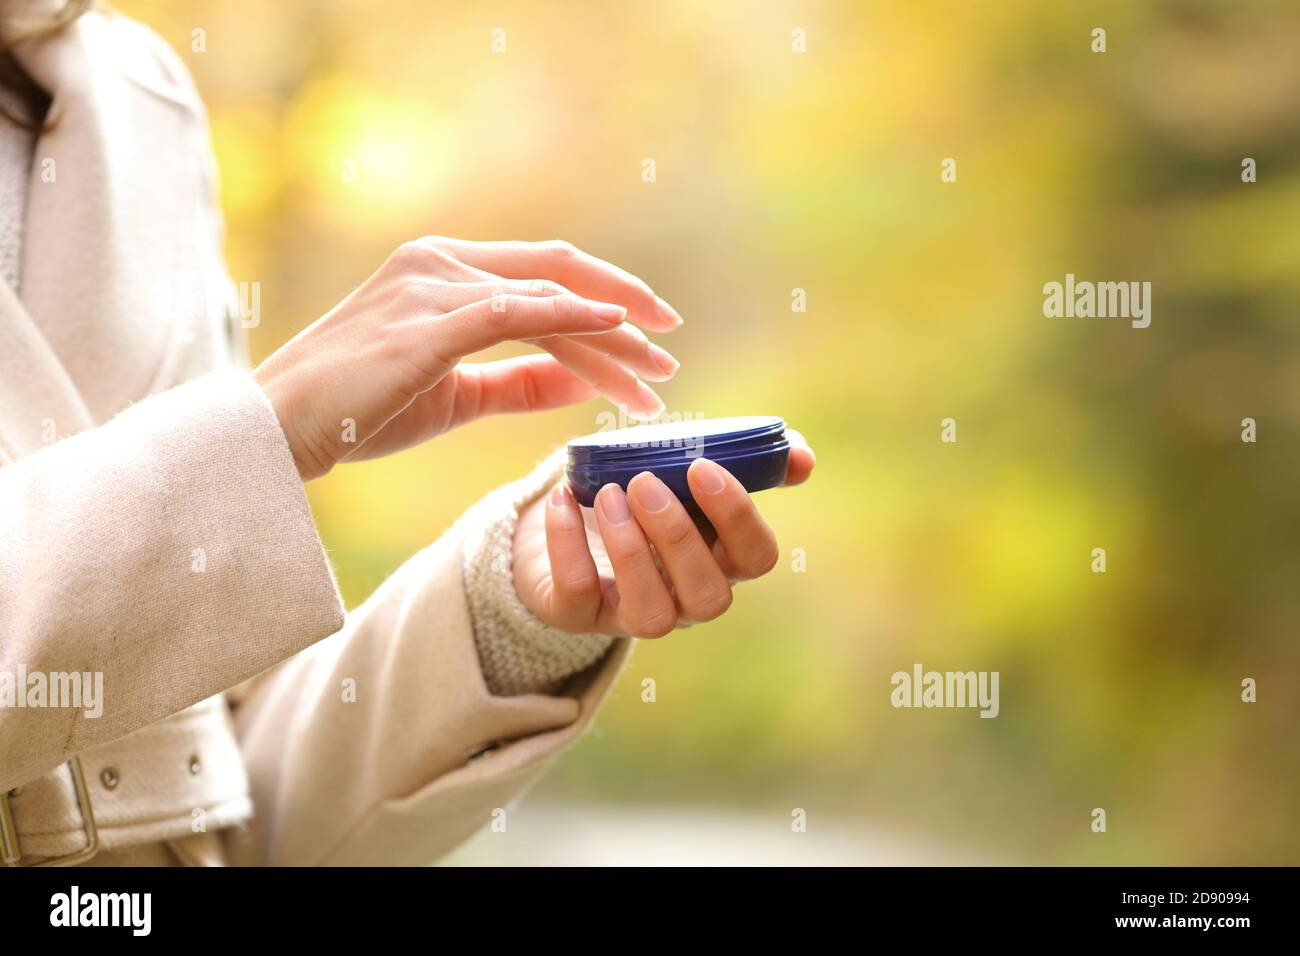 Gros plan de la femme mains sèches en automne tenant un flacon hydratant prêt à appliquer de la crème Banque D'Images